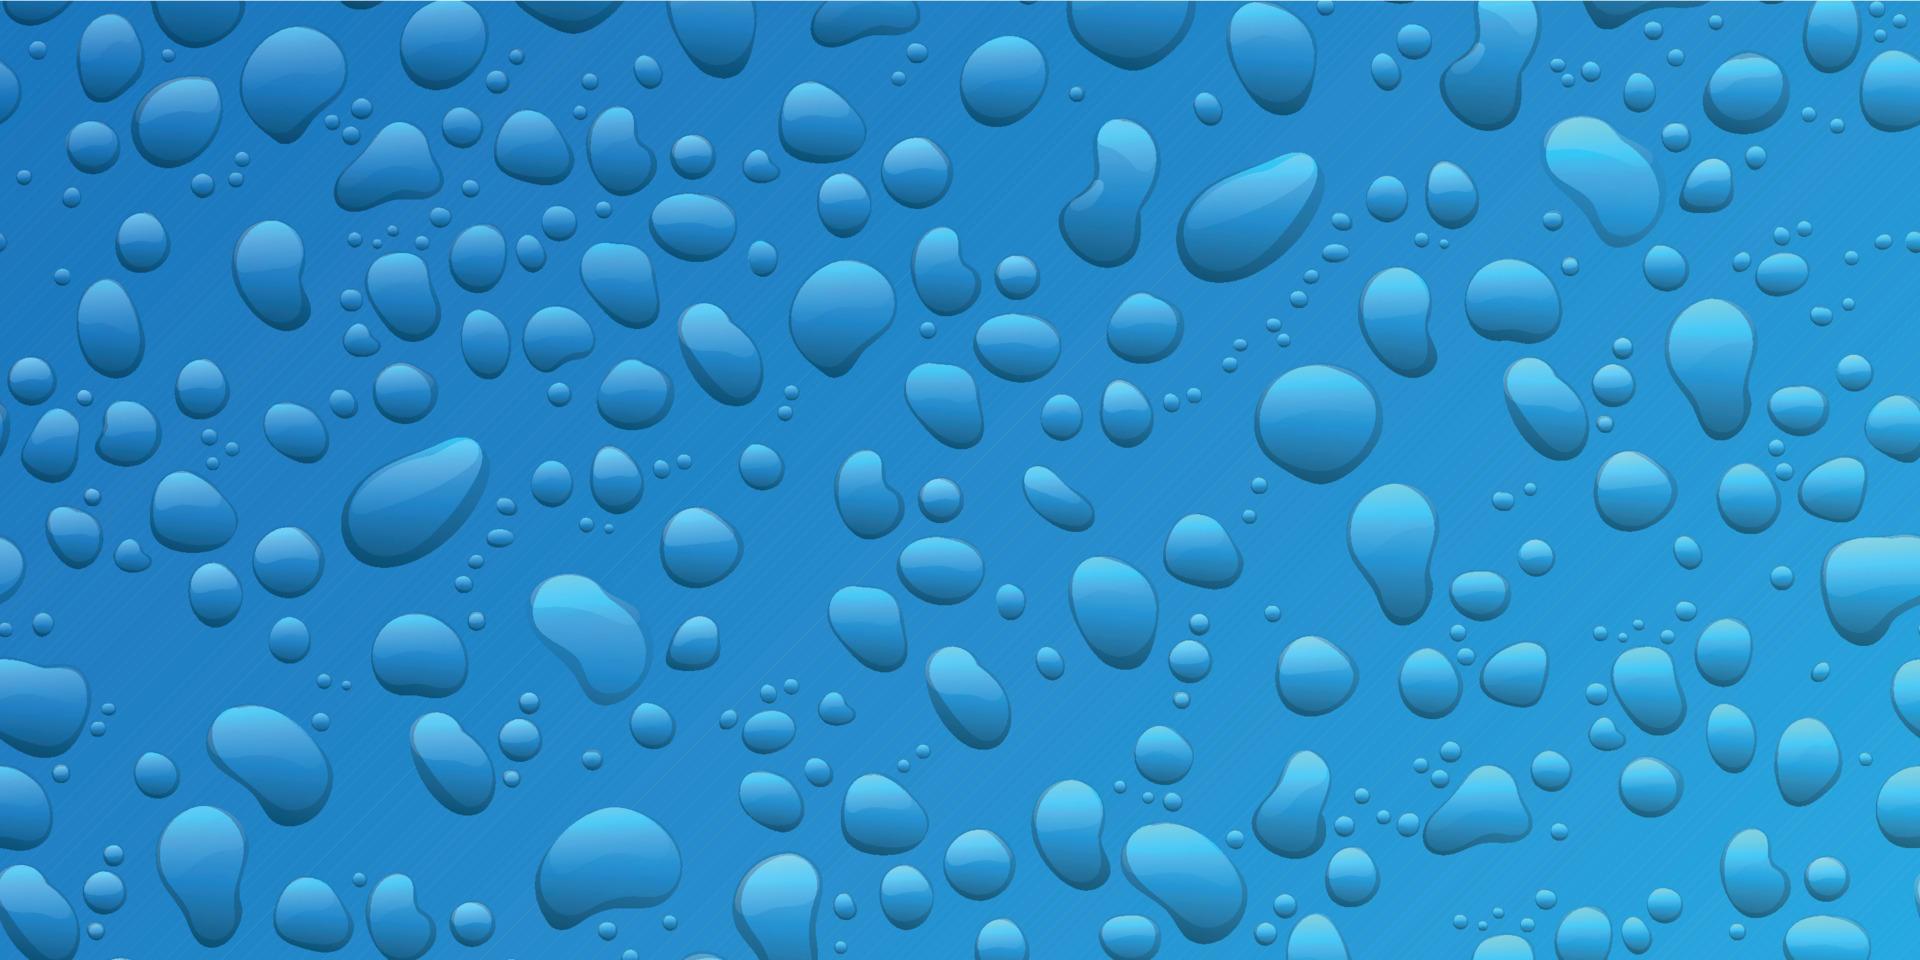 gouttes d'eau sur fond bleu. condensation de gouttelettes de pluie pures réalistes vecteur